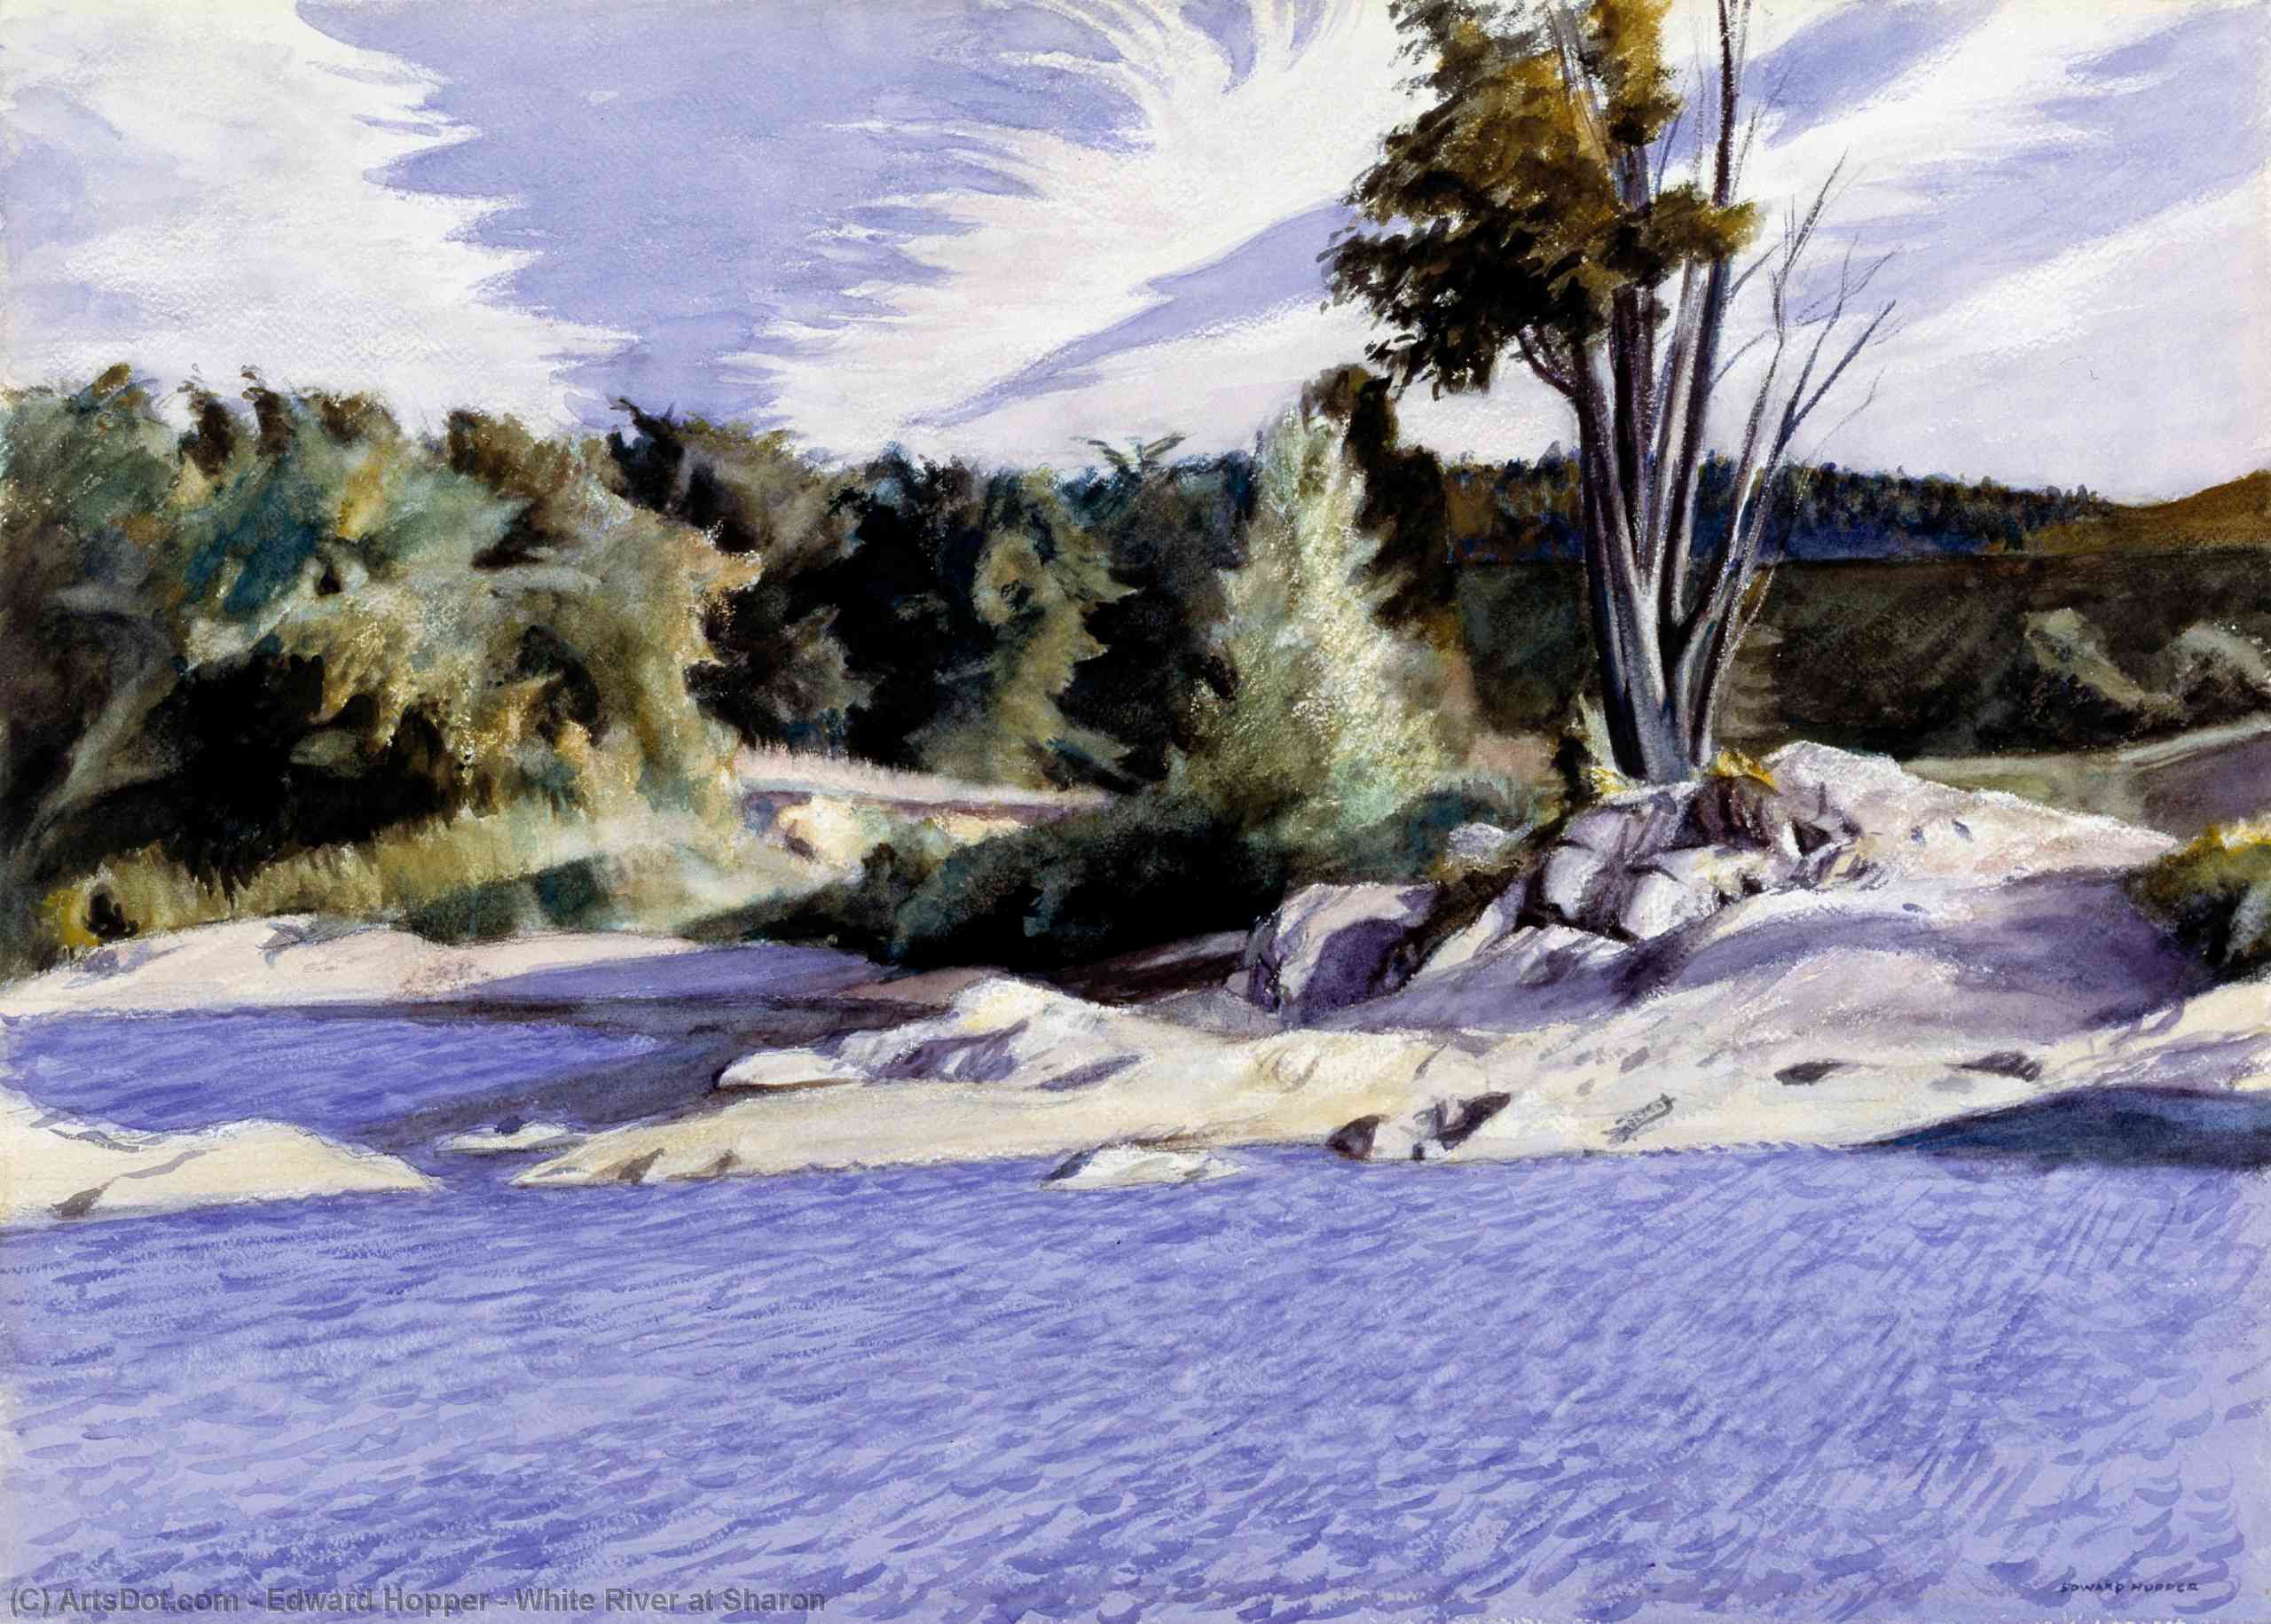 Wikoo.org - موسوعة الفنون الجميلة - اللوحة، العمل الفني Edward Hopper - White River at Sharon